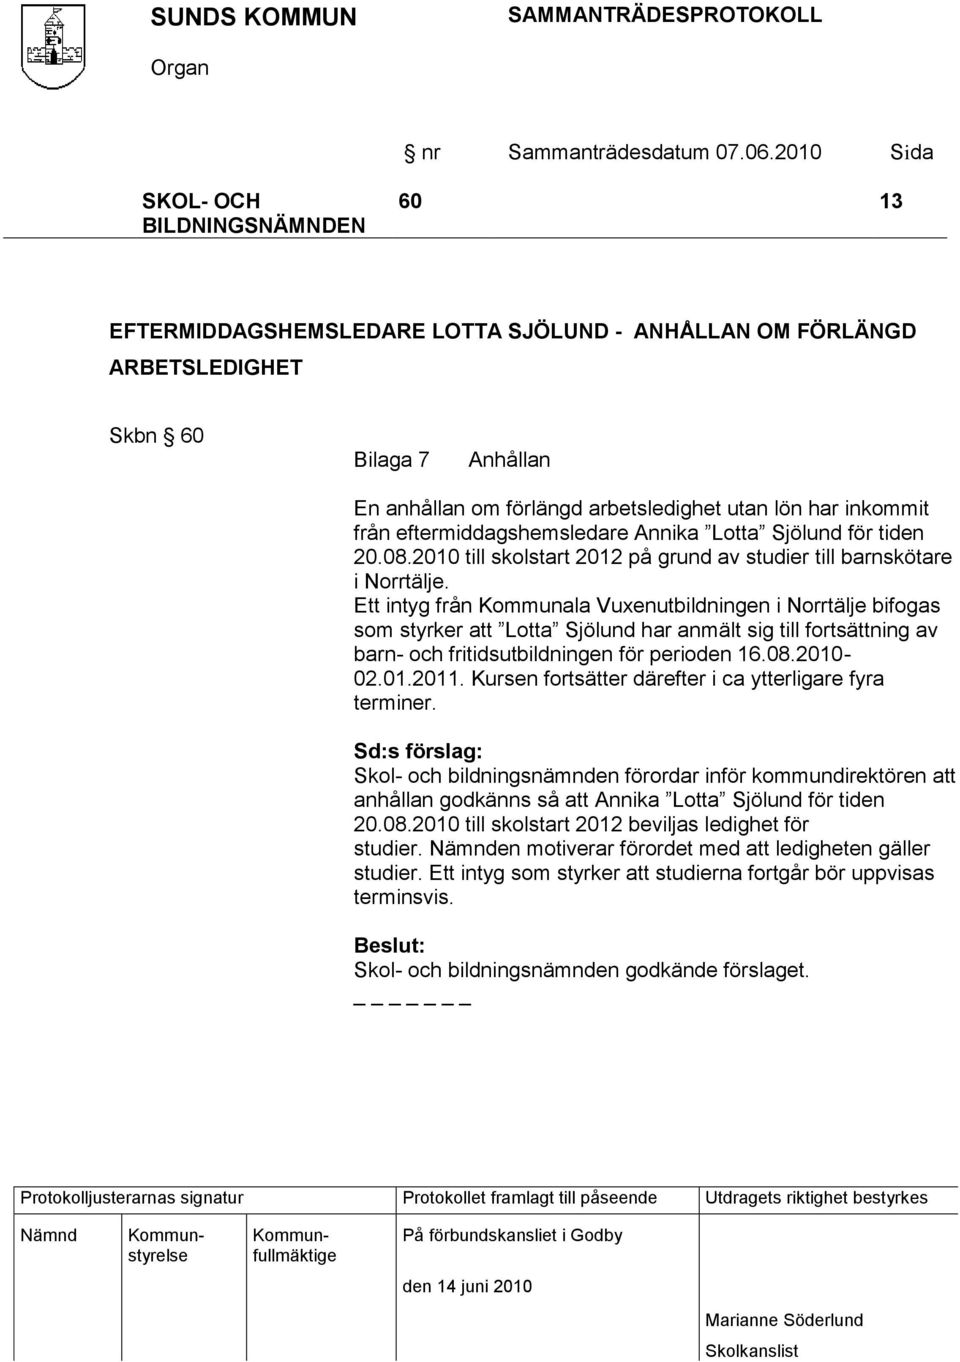 Ett intyg från Kommunala Vuxenutbildningen i Norrtälje bifogas som styrker att Lotta Sjölund har anmält sig till fortsättning av barn- och fritidsutbildningen för perioden 16.08.2010-02.01.2011.